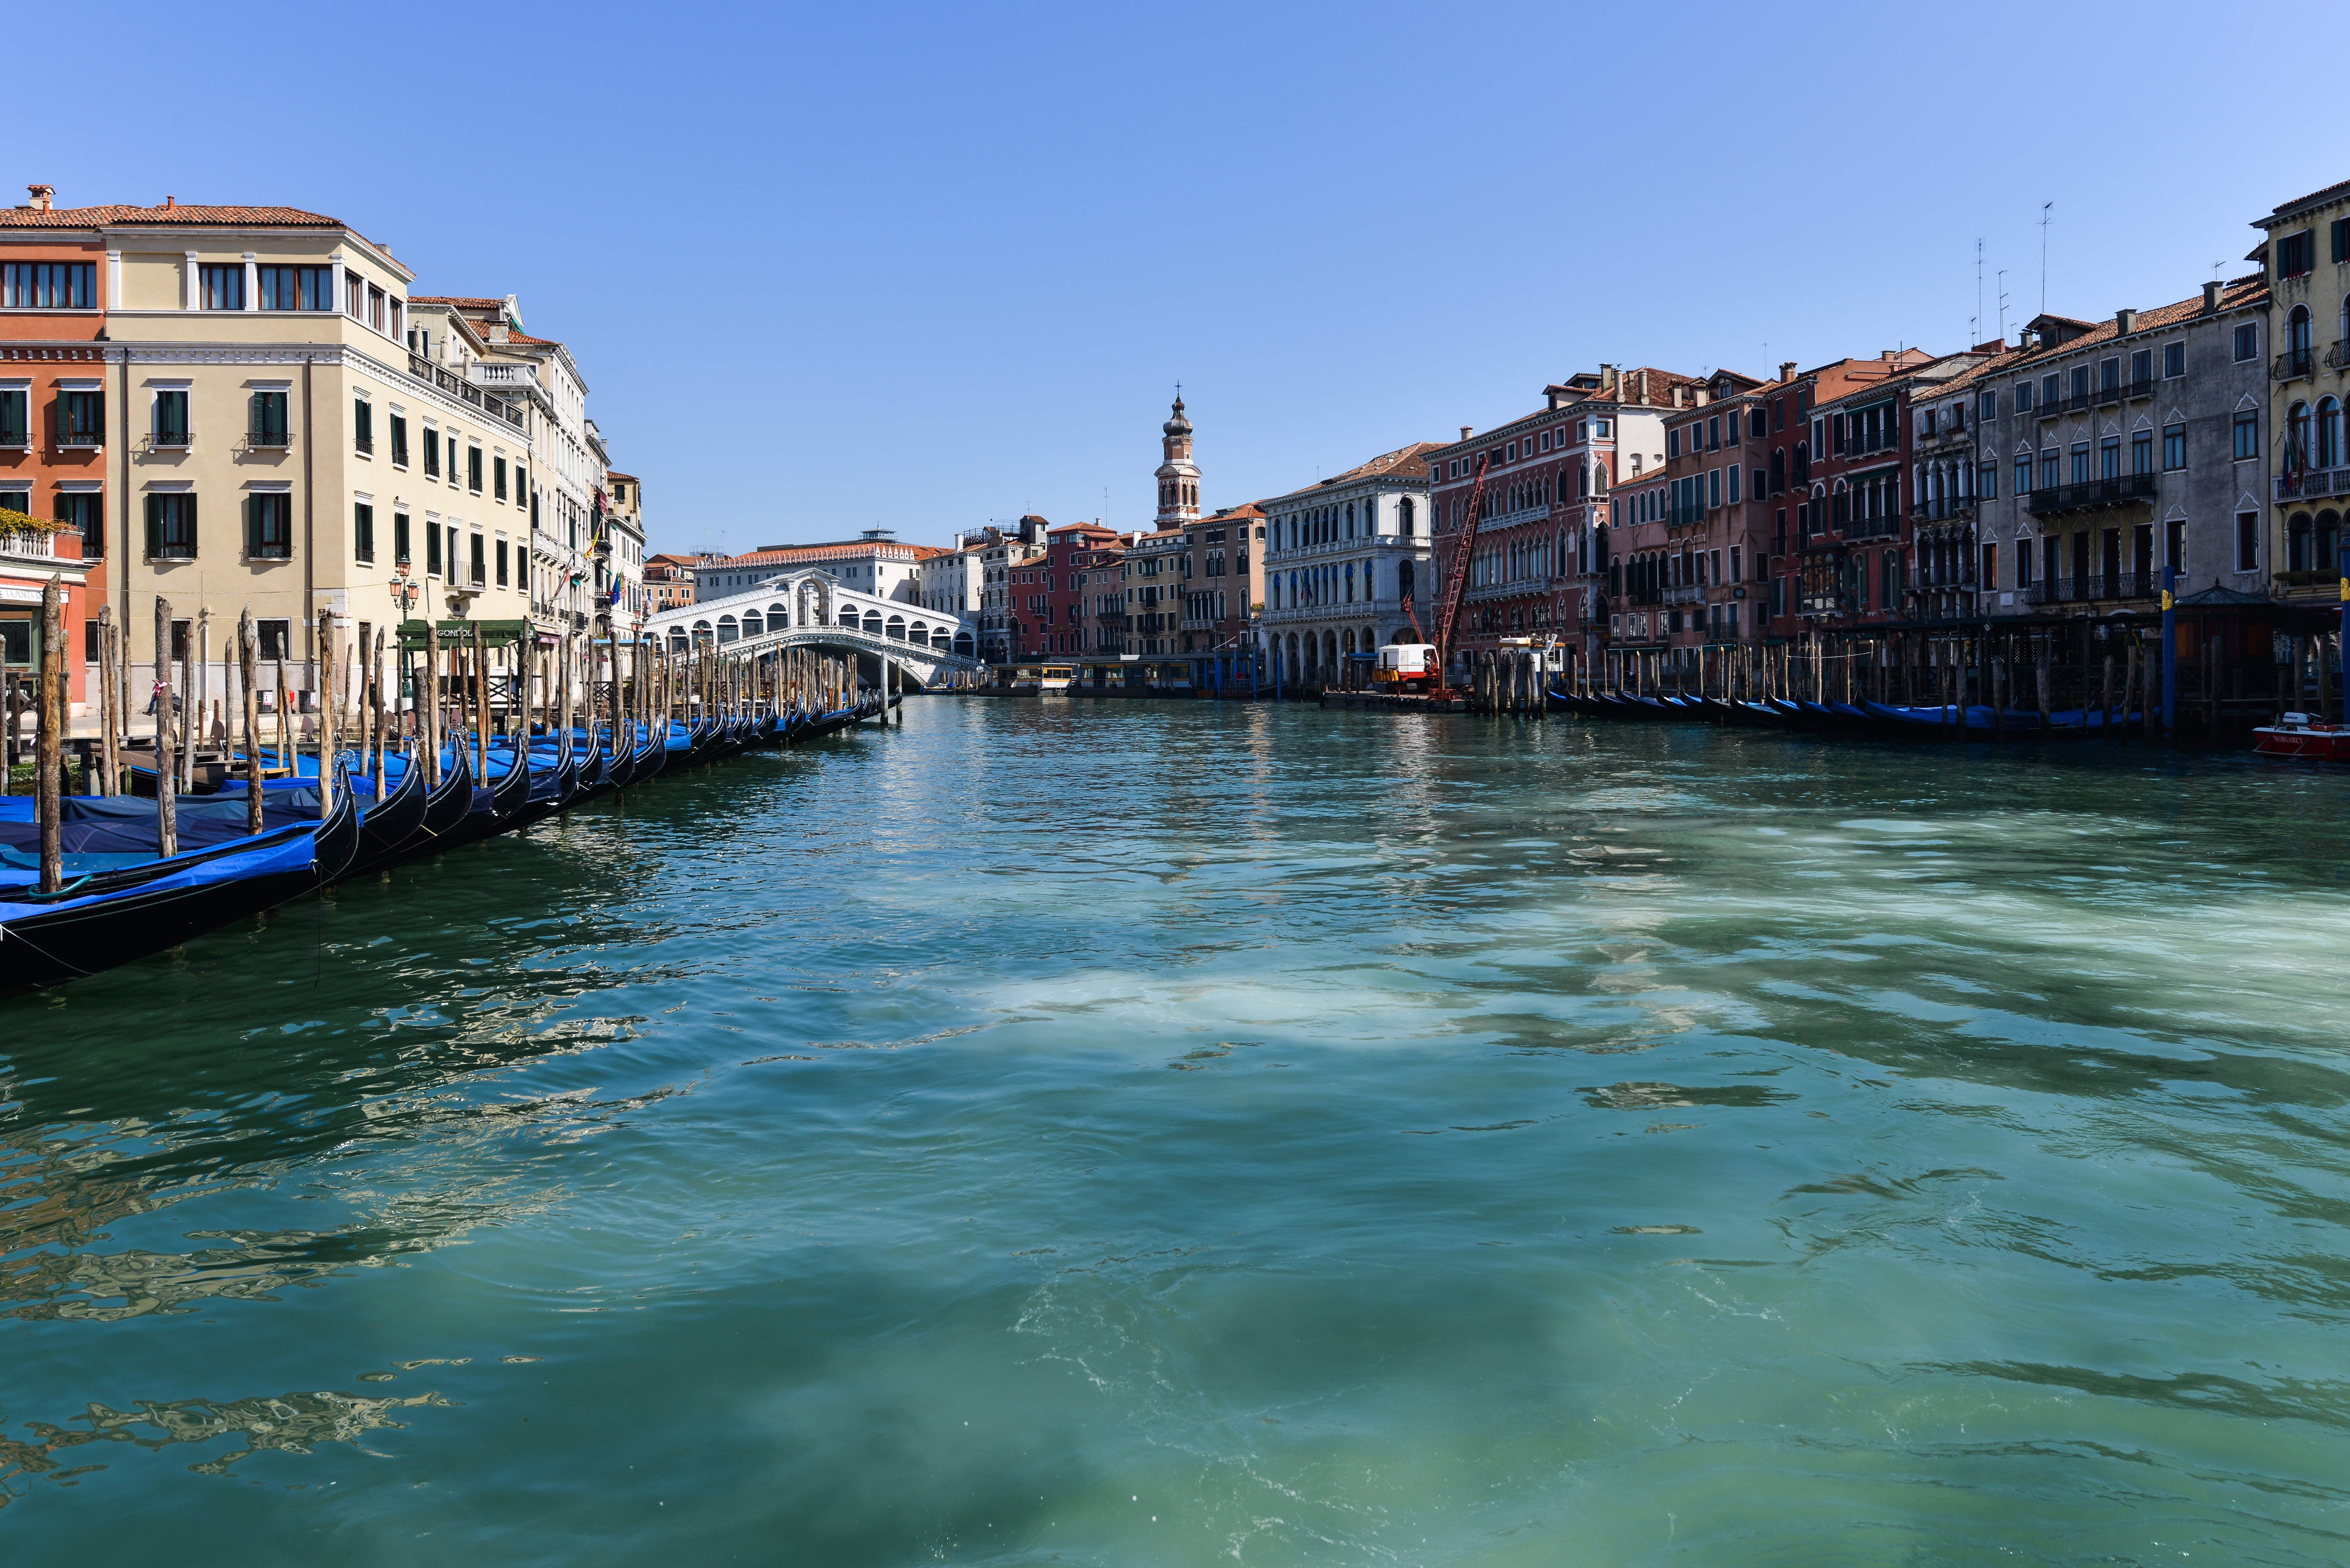 Река в венеции. Италия каналы Венеции. Город на воде в Италии Венеция. Италия засуха Венеция. Бирюзовый канал, Венеция, Италия.